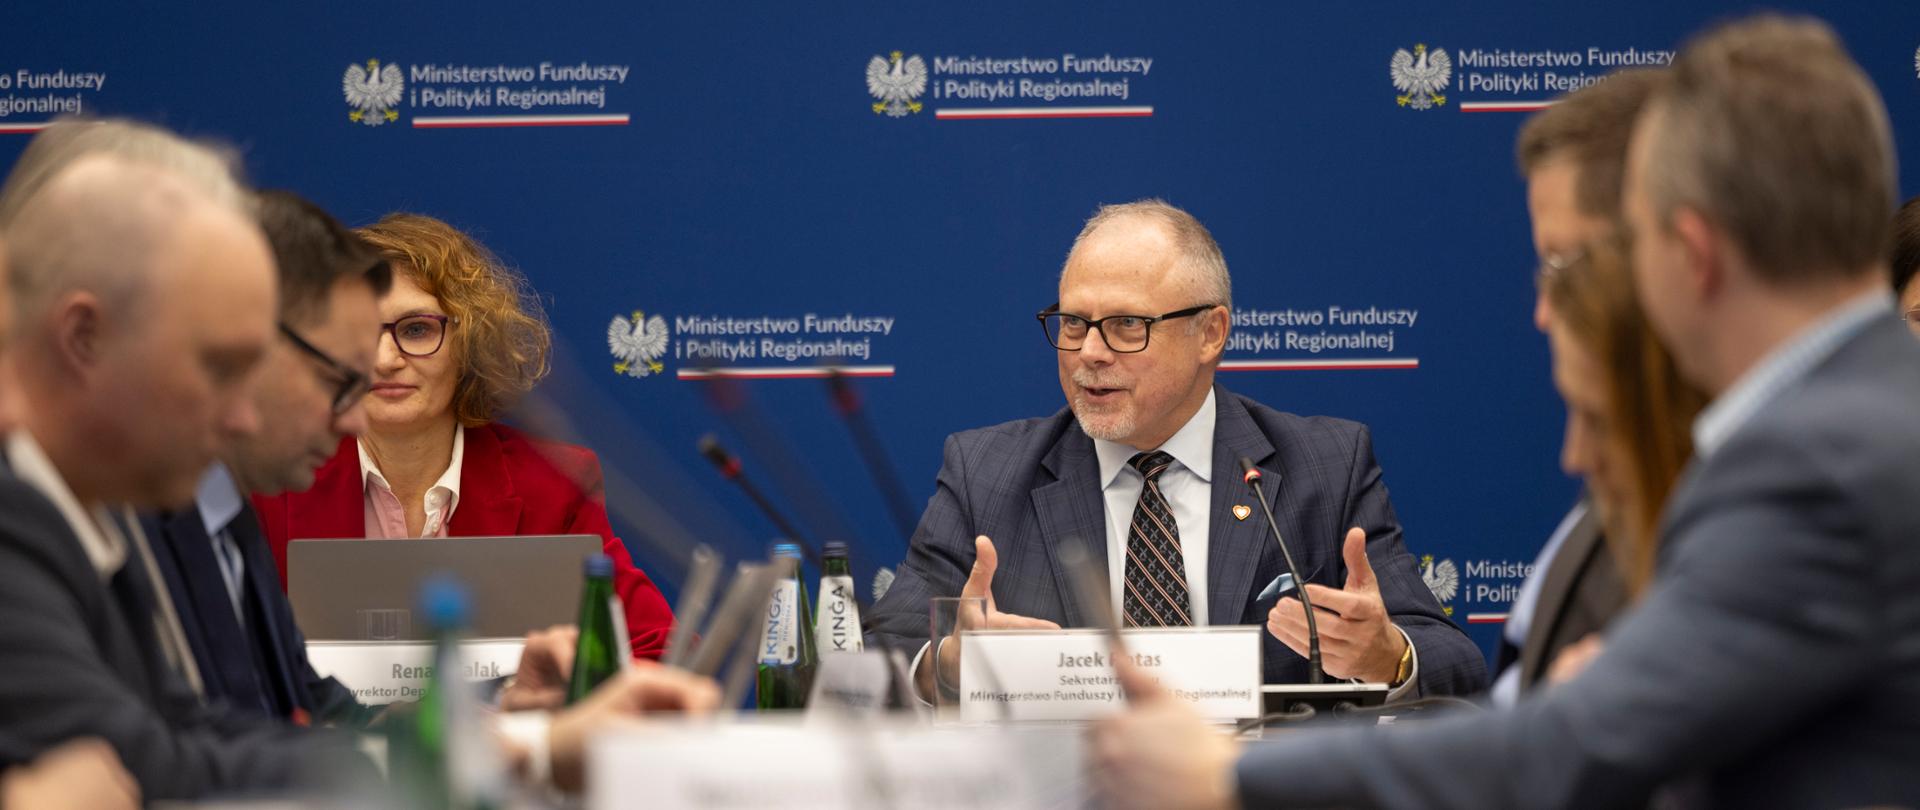 Wiceminister Jacek Protas wśród osób osób siedzących przy stołach